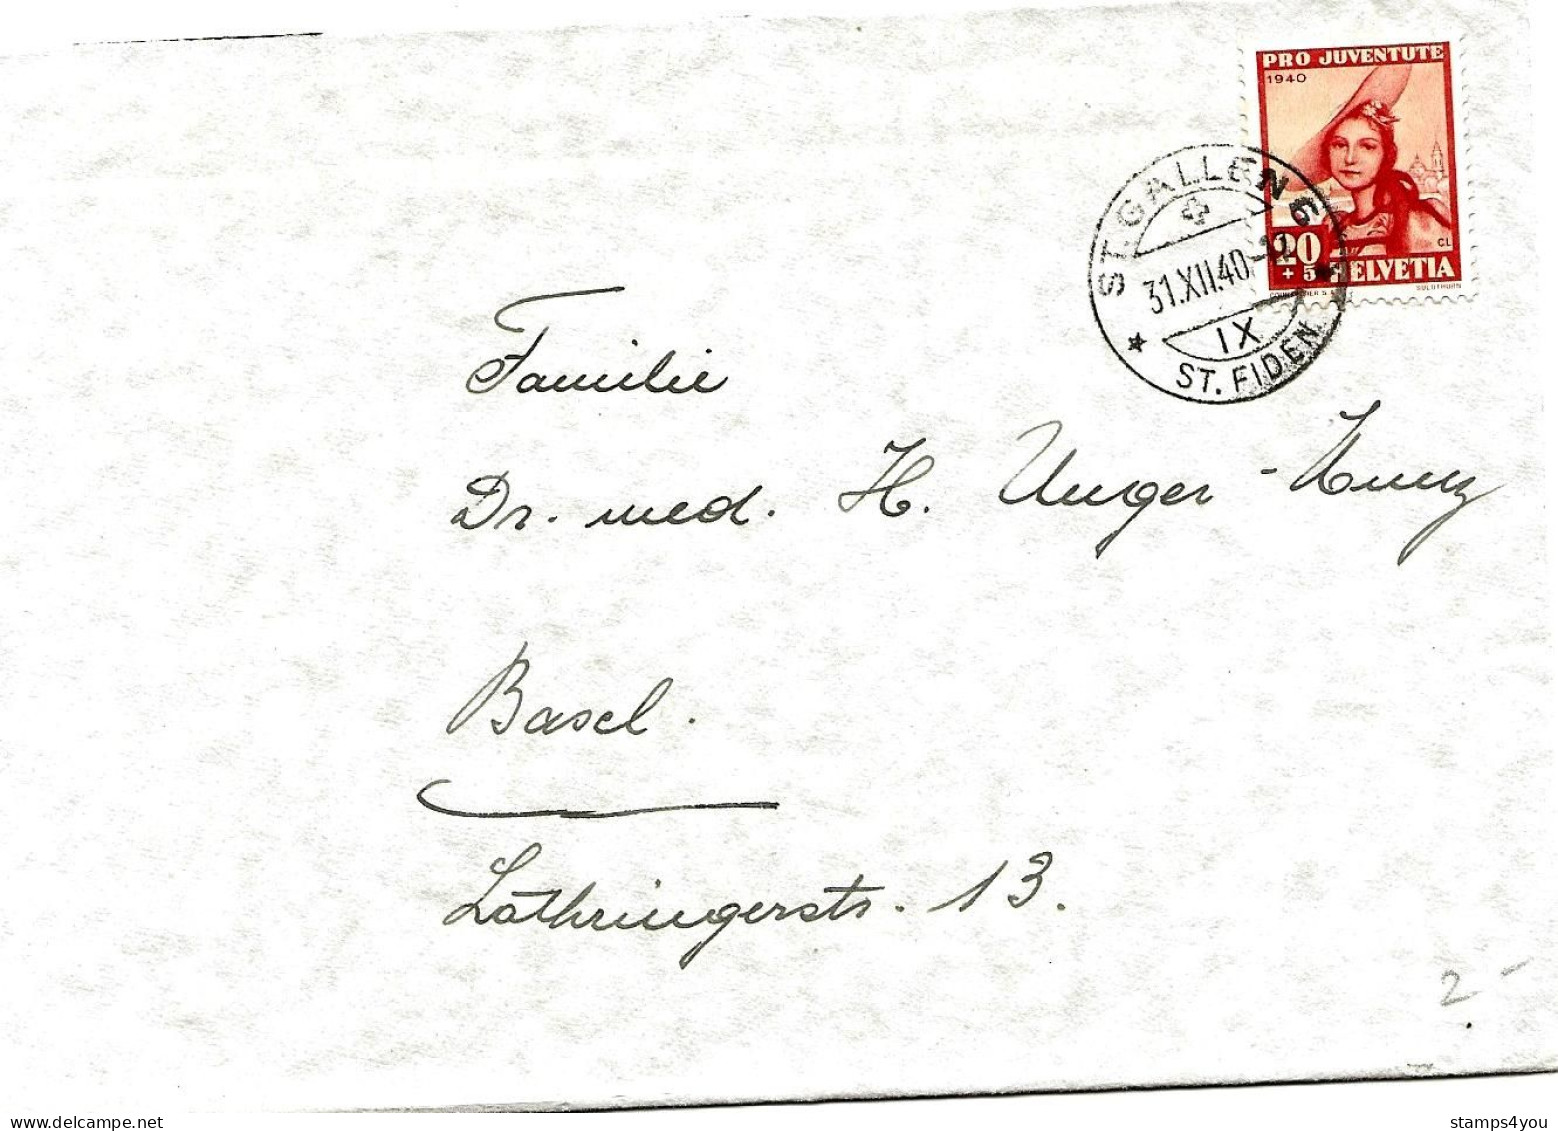 79 - 89 - Enveloppe Avec Timbre Pro Juventute 1940 - Cachet à Date St Gallen 31.12.40. - Briefe U. Dokumente